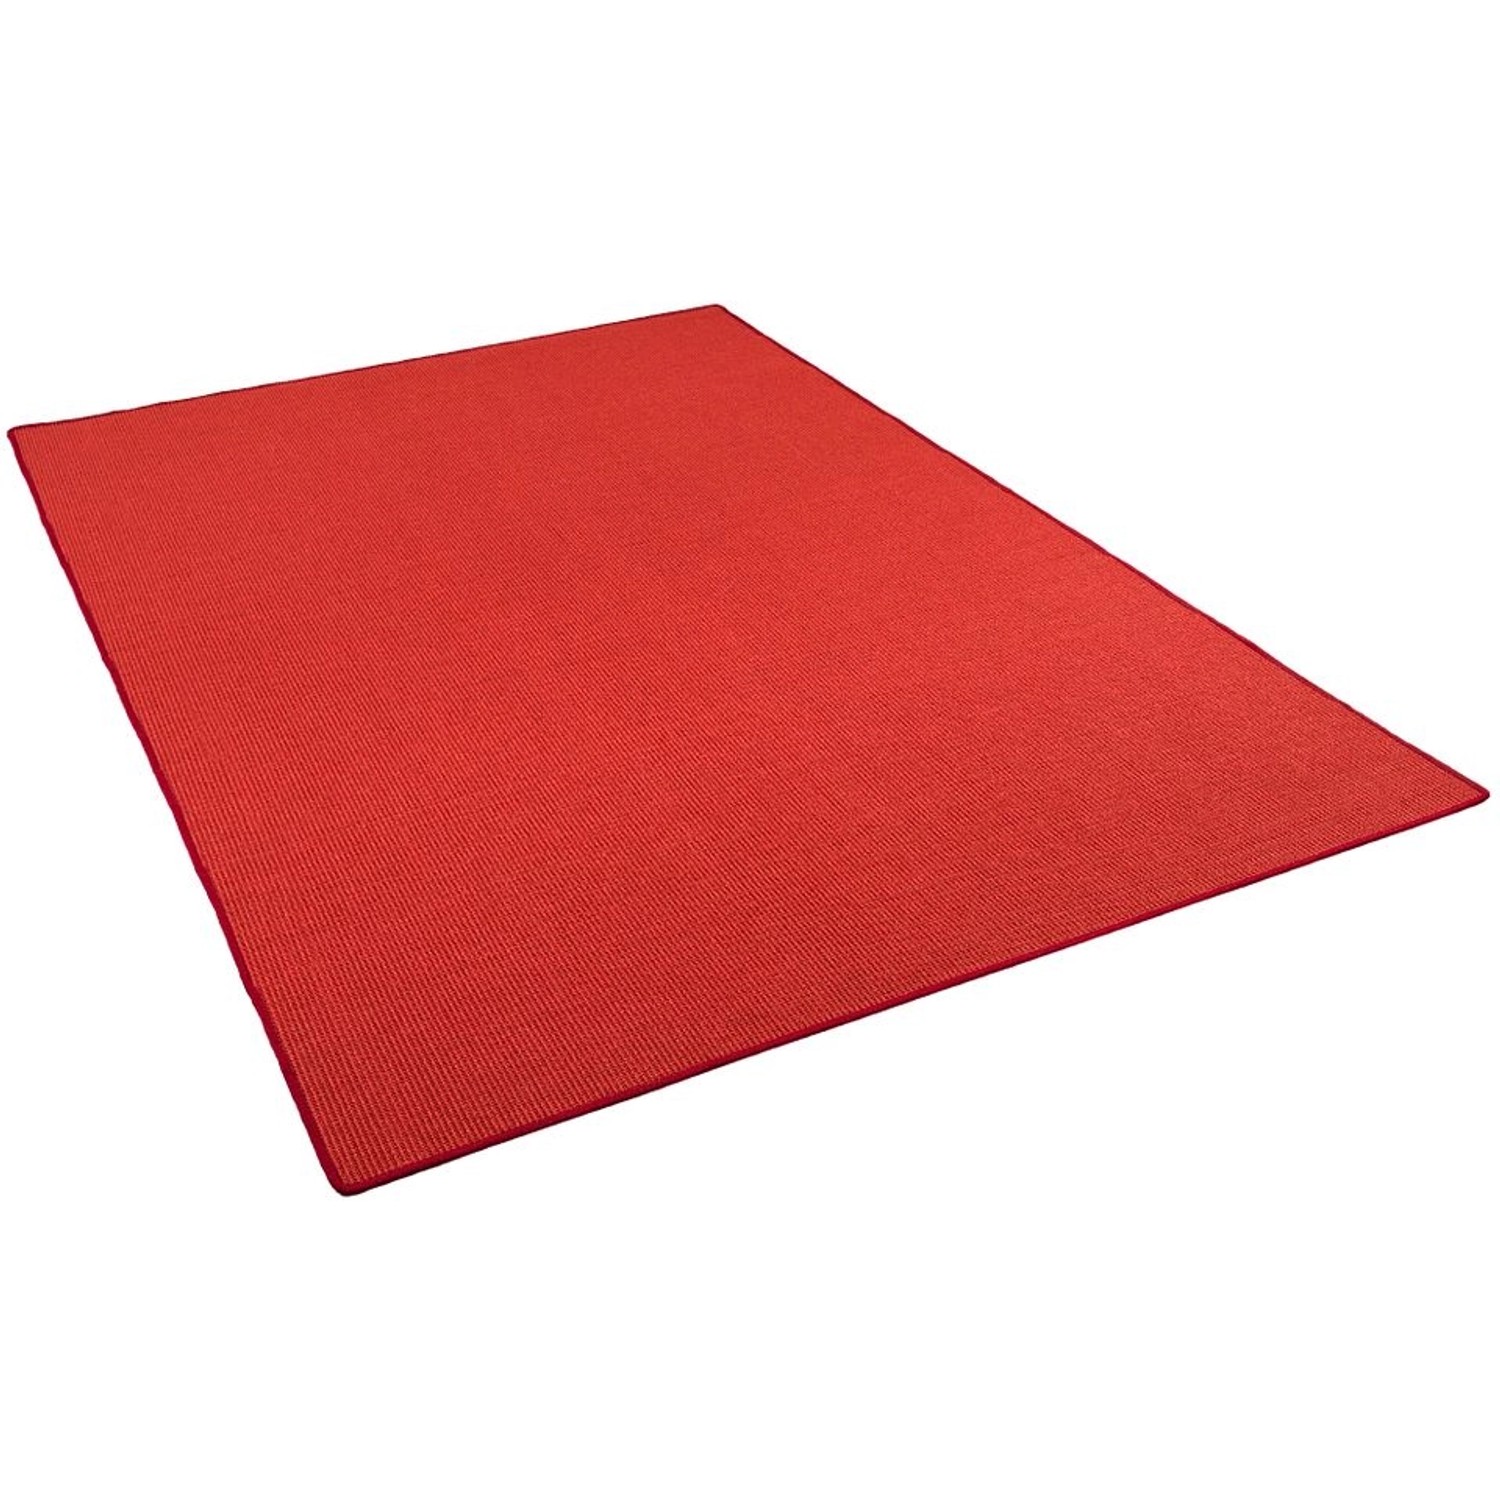 Snapstyle Sisal Natur Teppich Klassisch Rot  200x250 cm